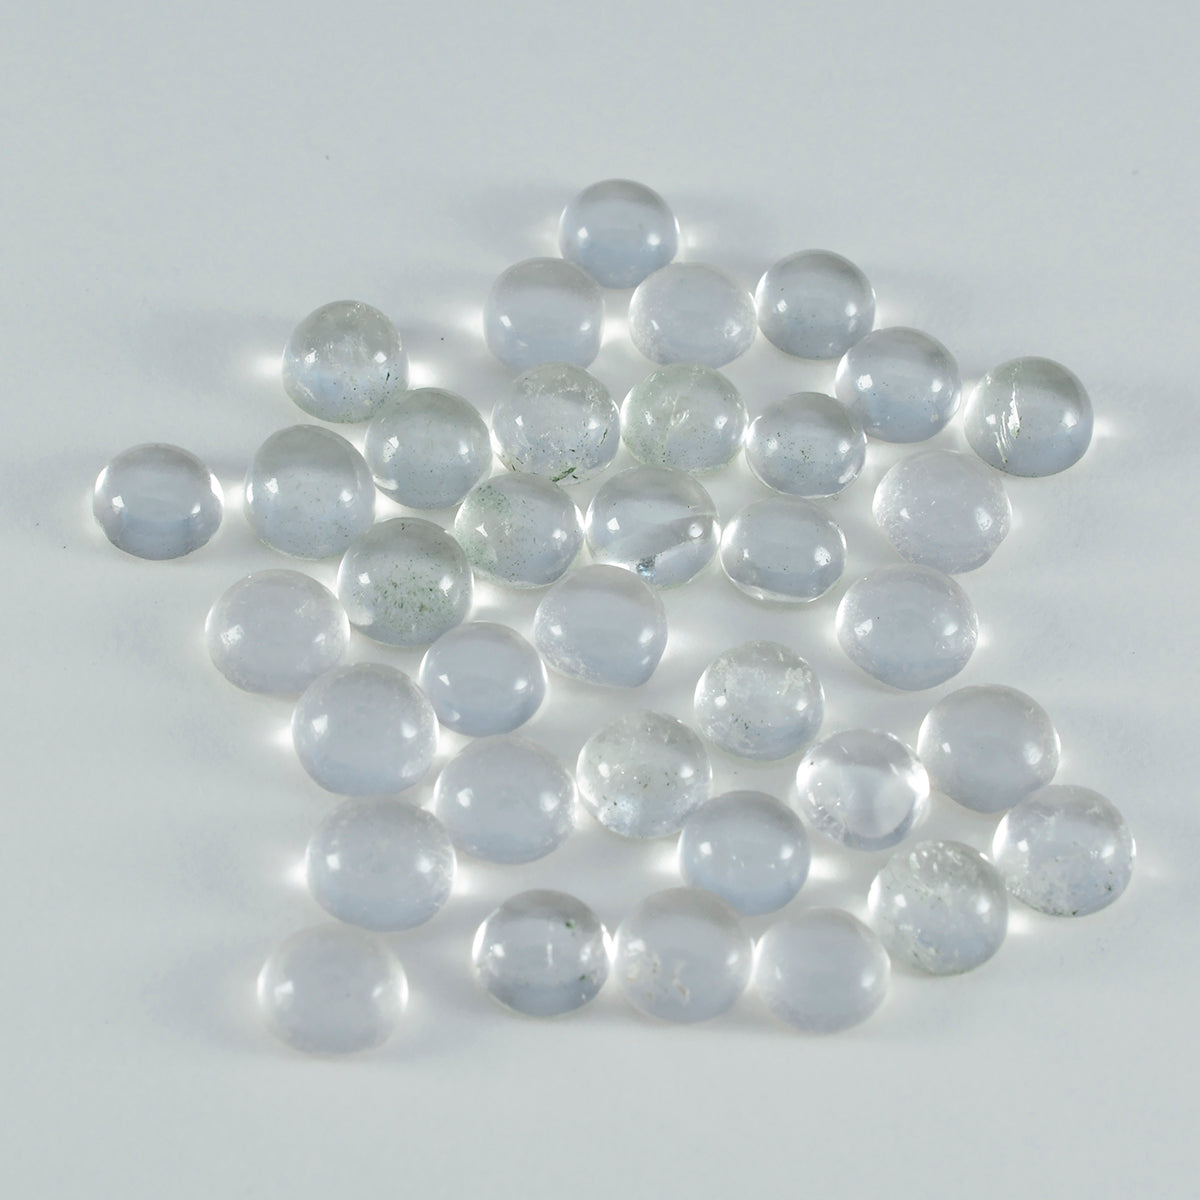 Riyogems, 1 pieza, cabujón de cuarzo de cristal blanco, 5x5mm, forma redonda, piedra suelta de calidad AAA